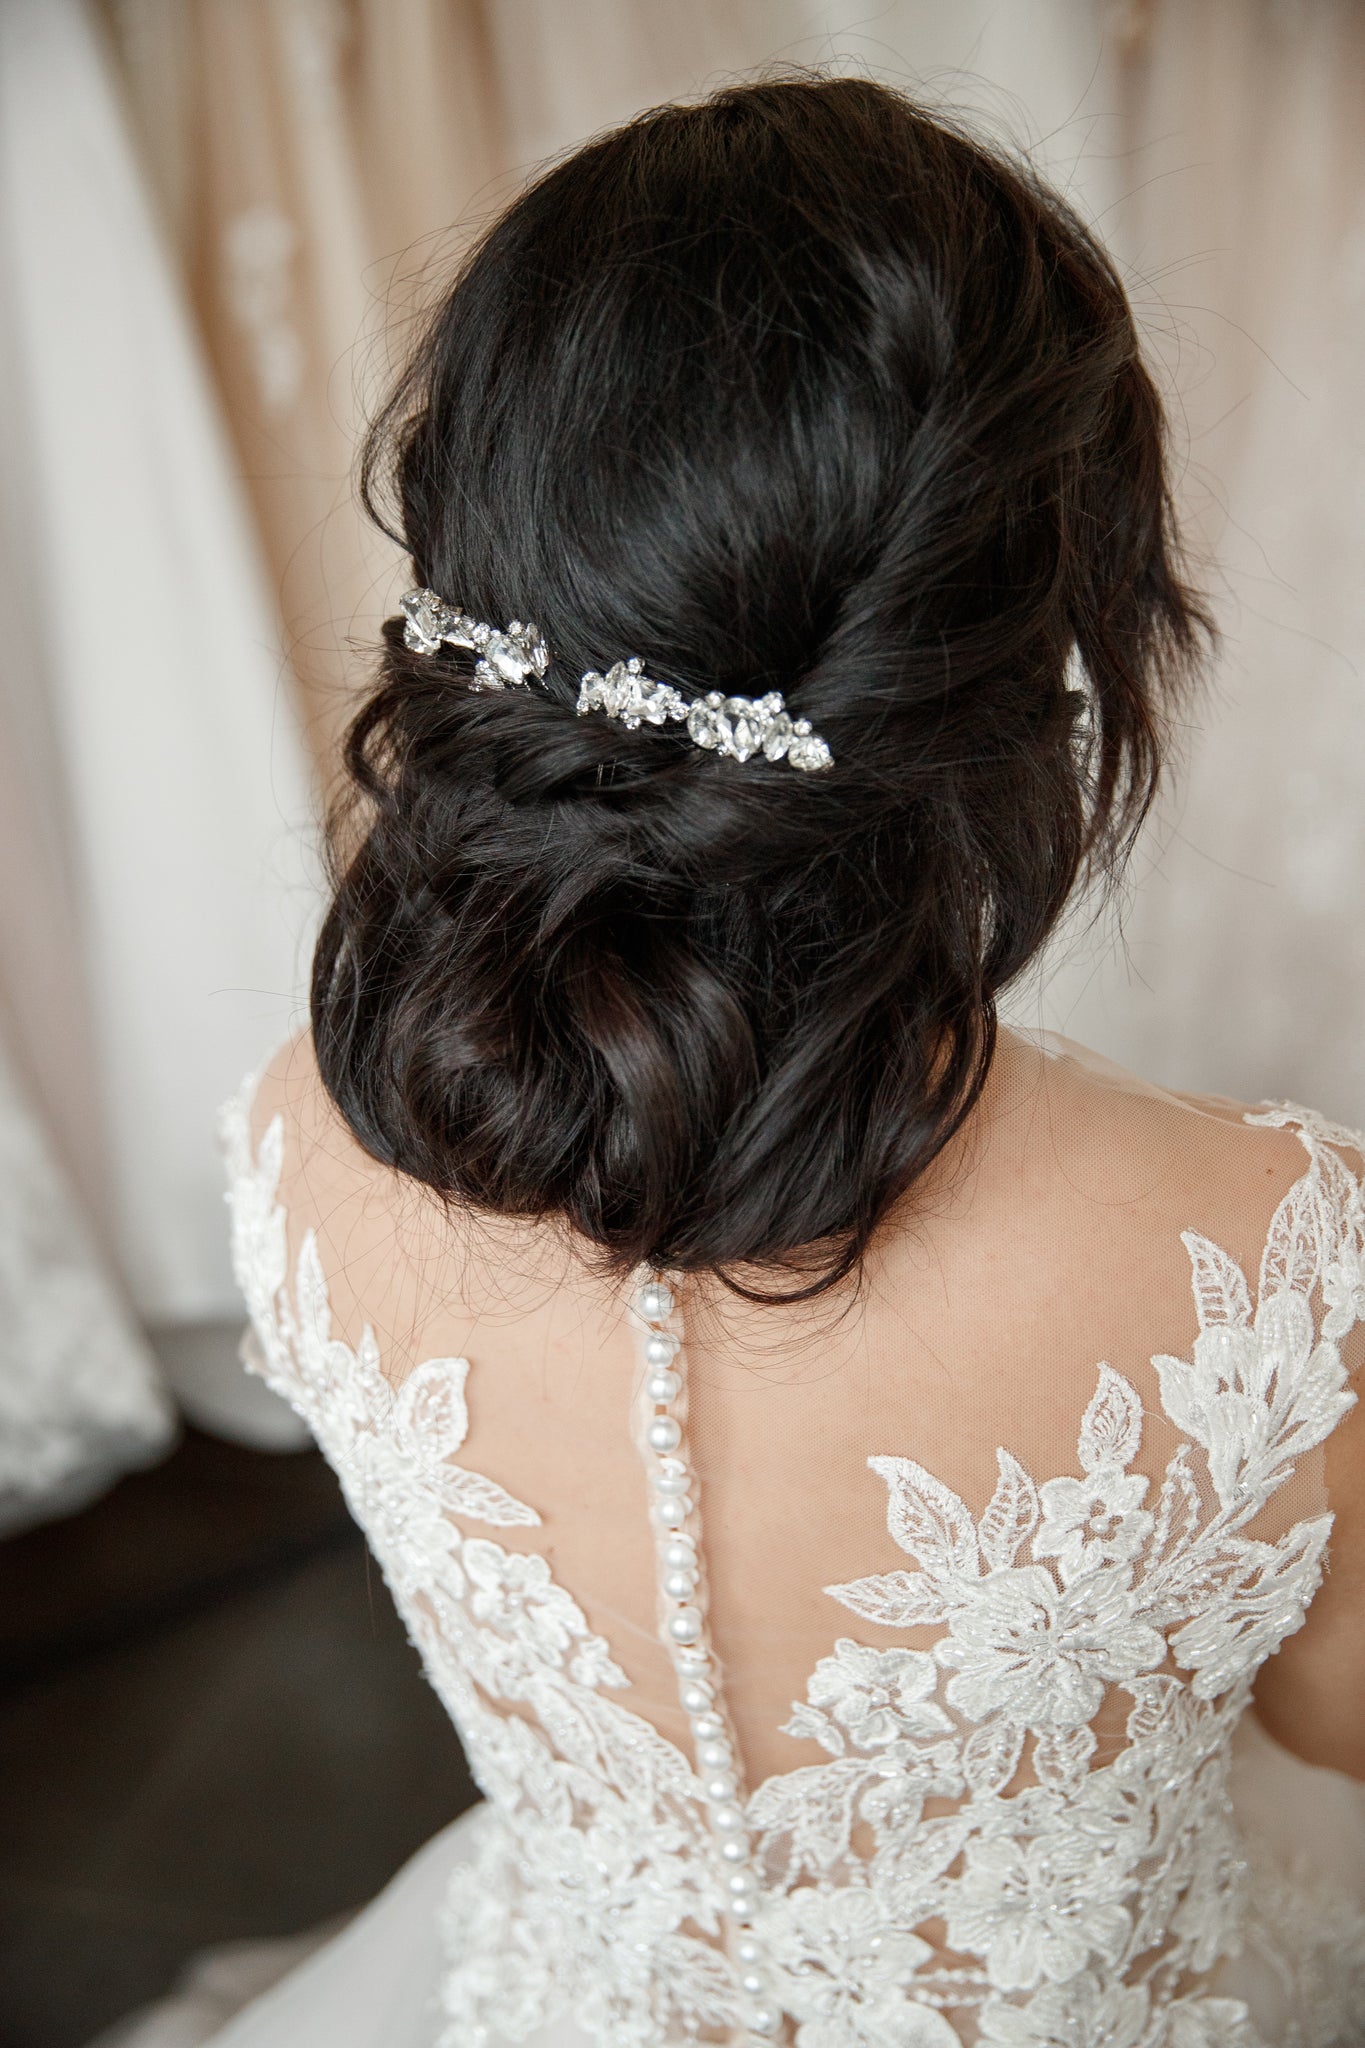 Crystal bridal hair pins